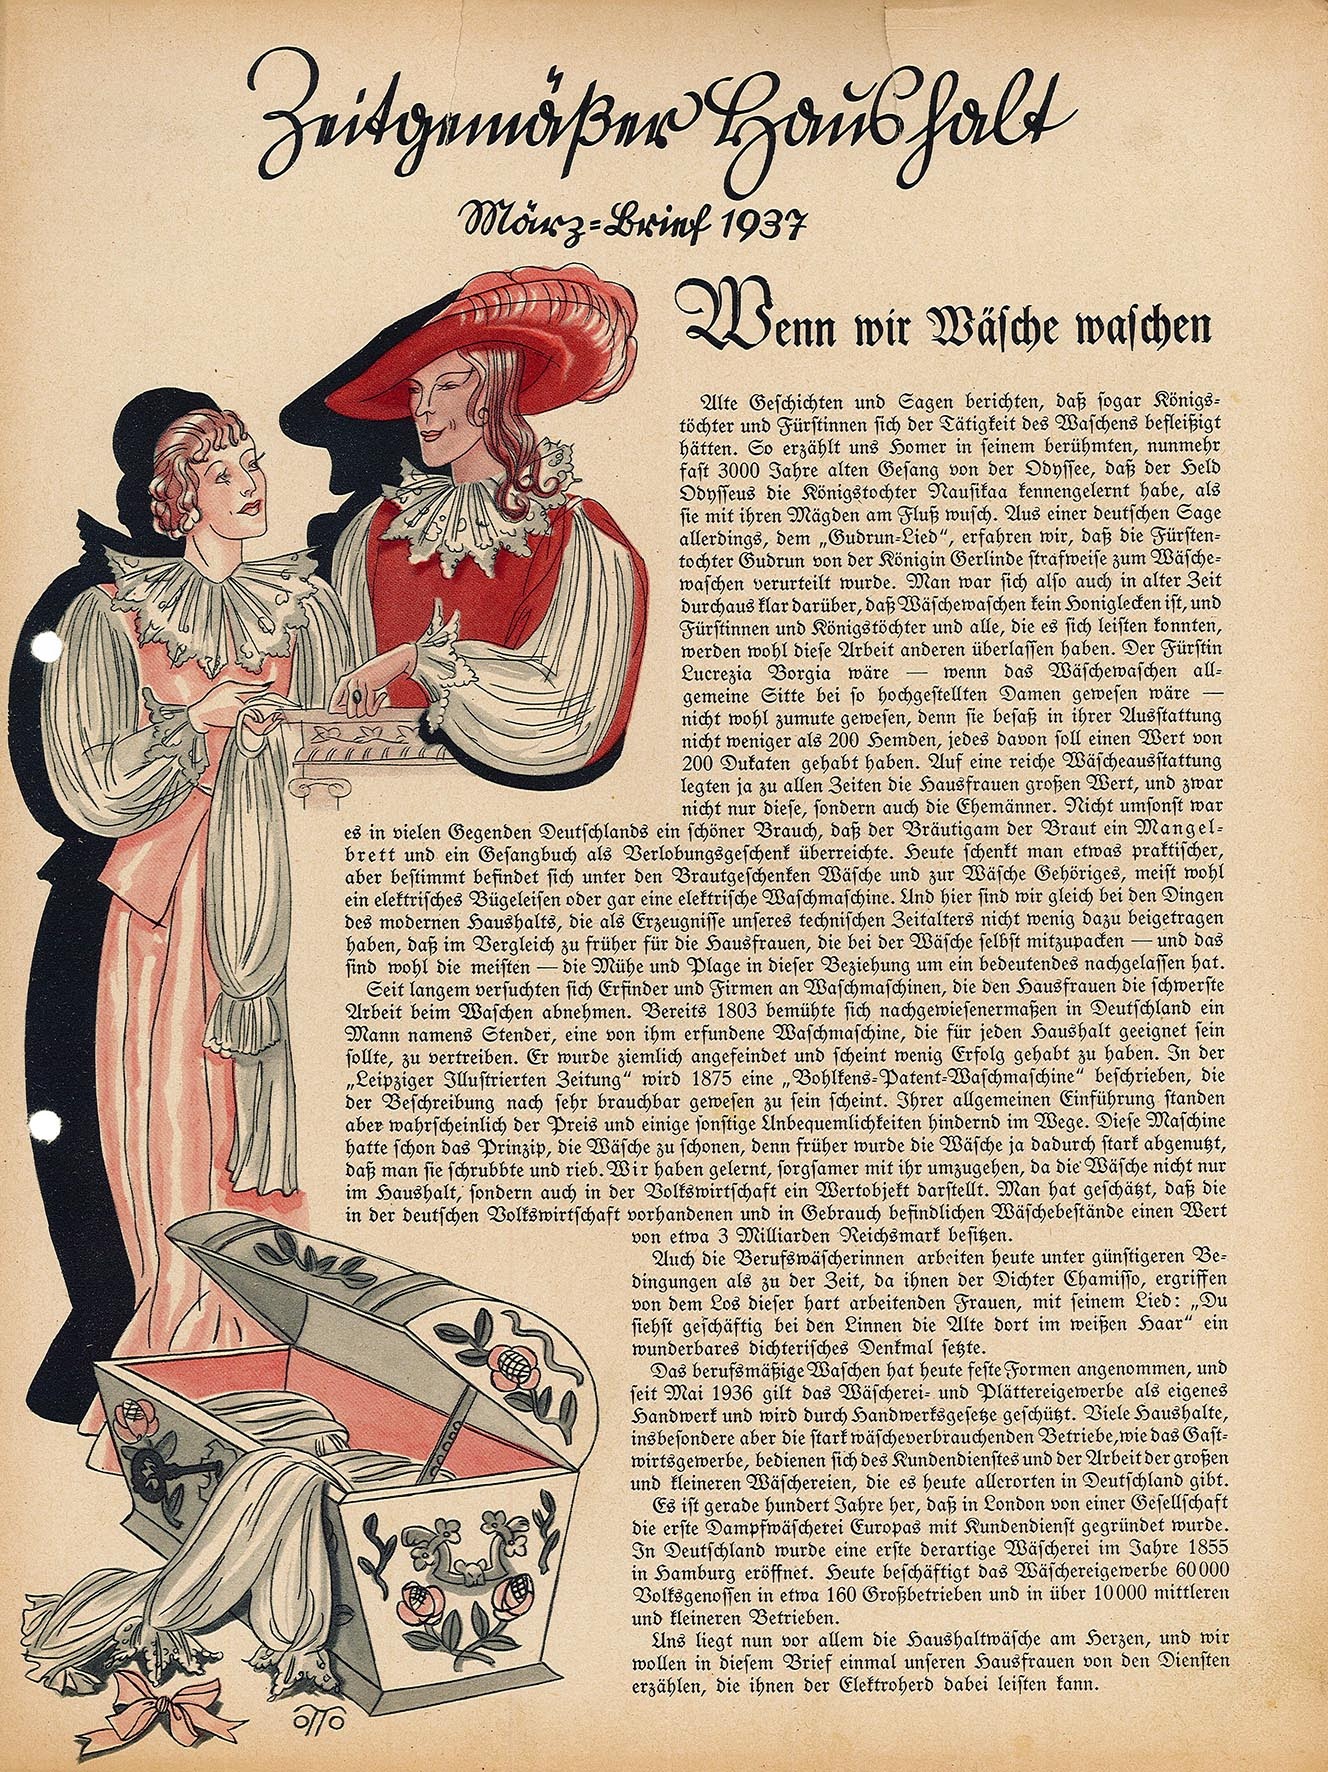 Informationsblatt: Zeitgemäßer Haushalt, März-Brief 1937 (Museum Wolmirstedt RR-F)